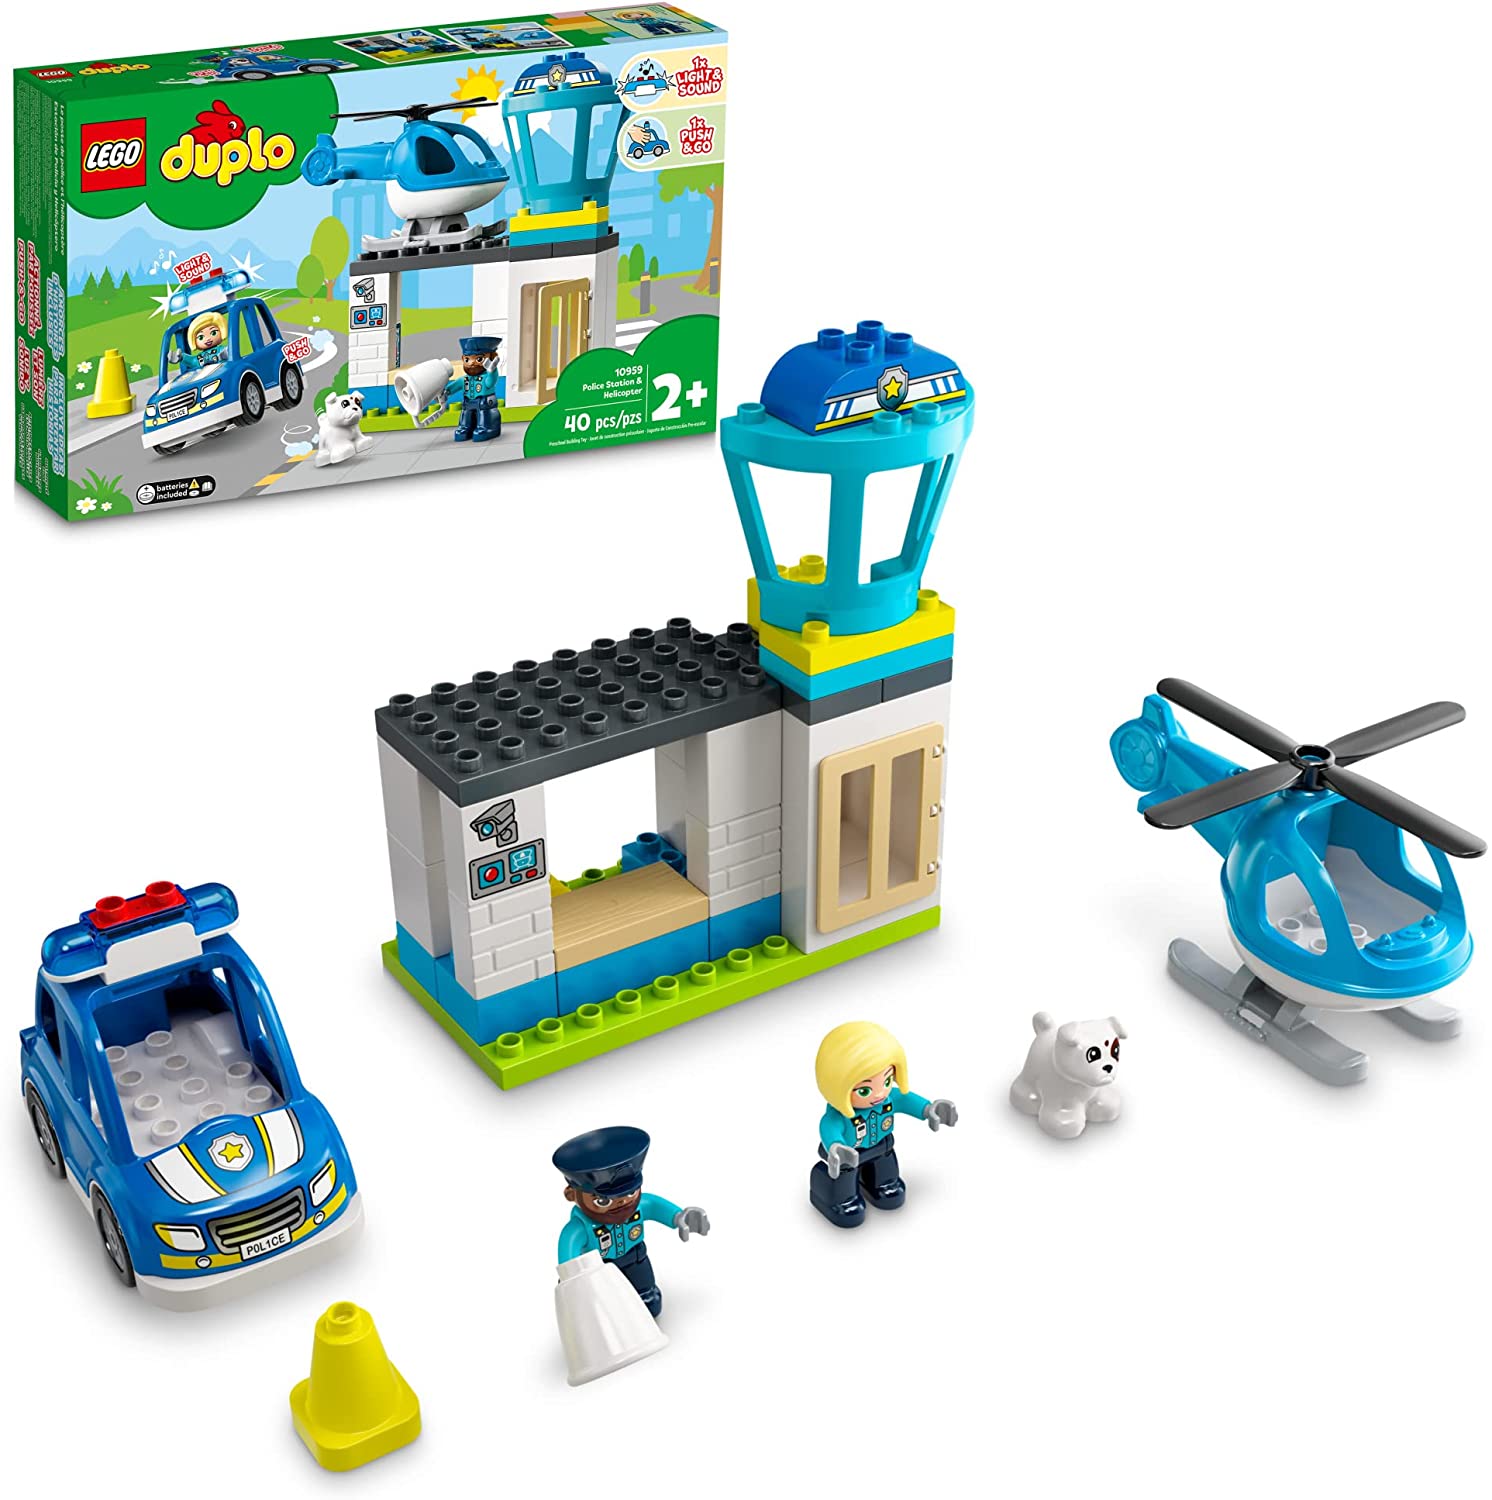 Конструктор LEGO DUPLO Town 10959 Полицейский участок и вертолёт